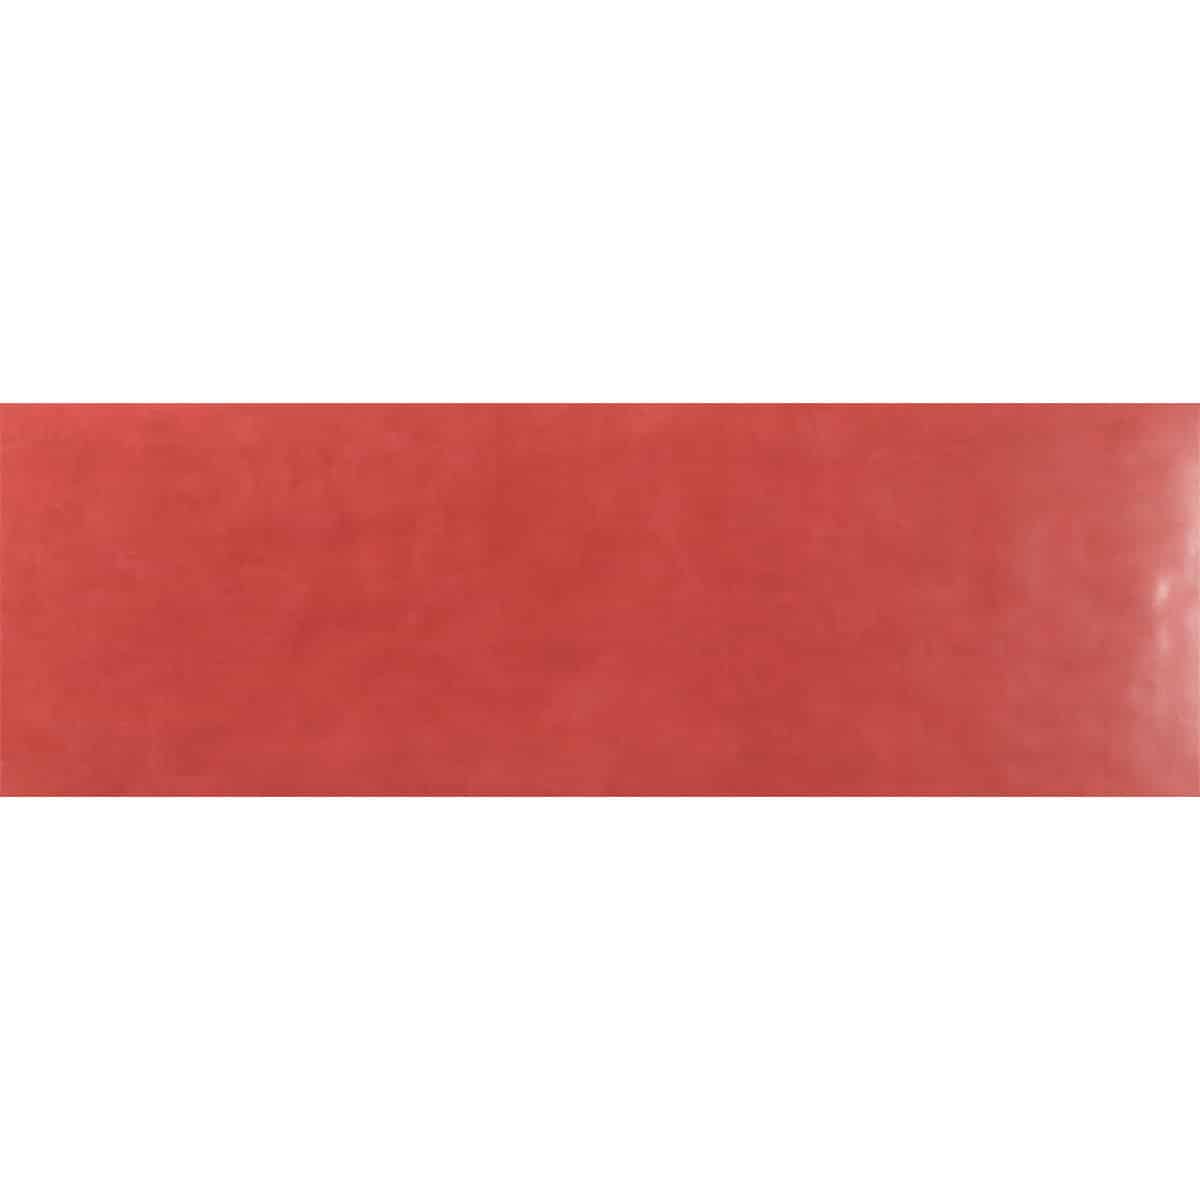 Πλακάκι AQUARELLA Red KARAG 30x90cm